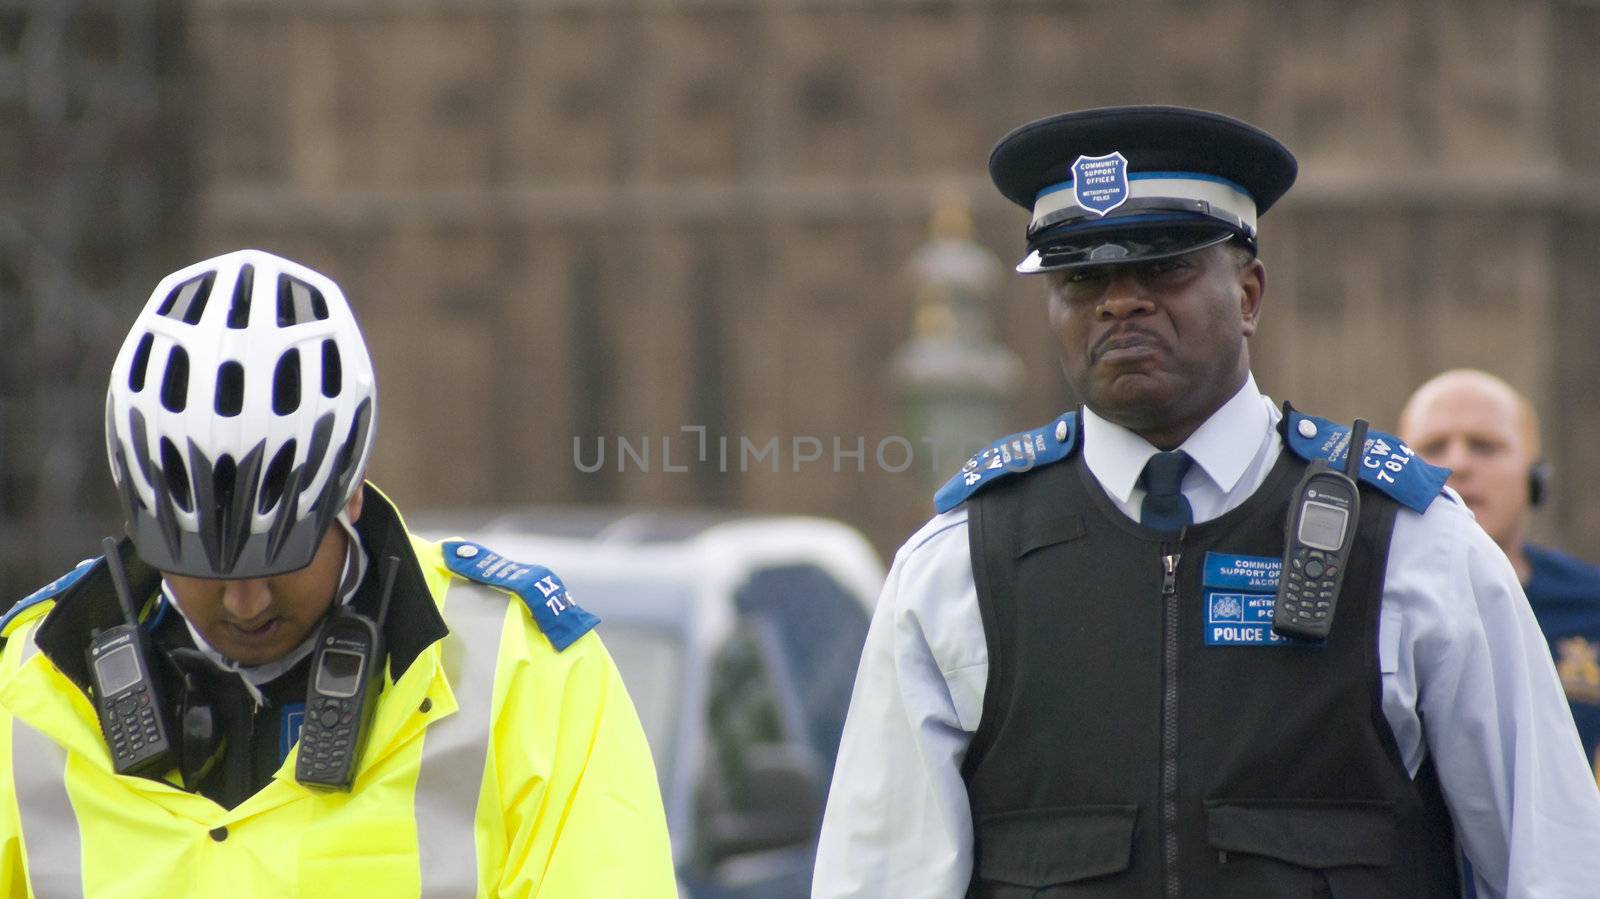 British policemen